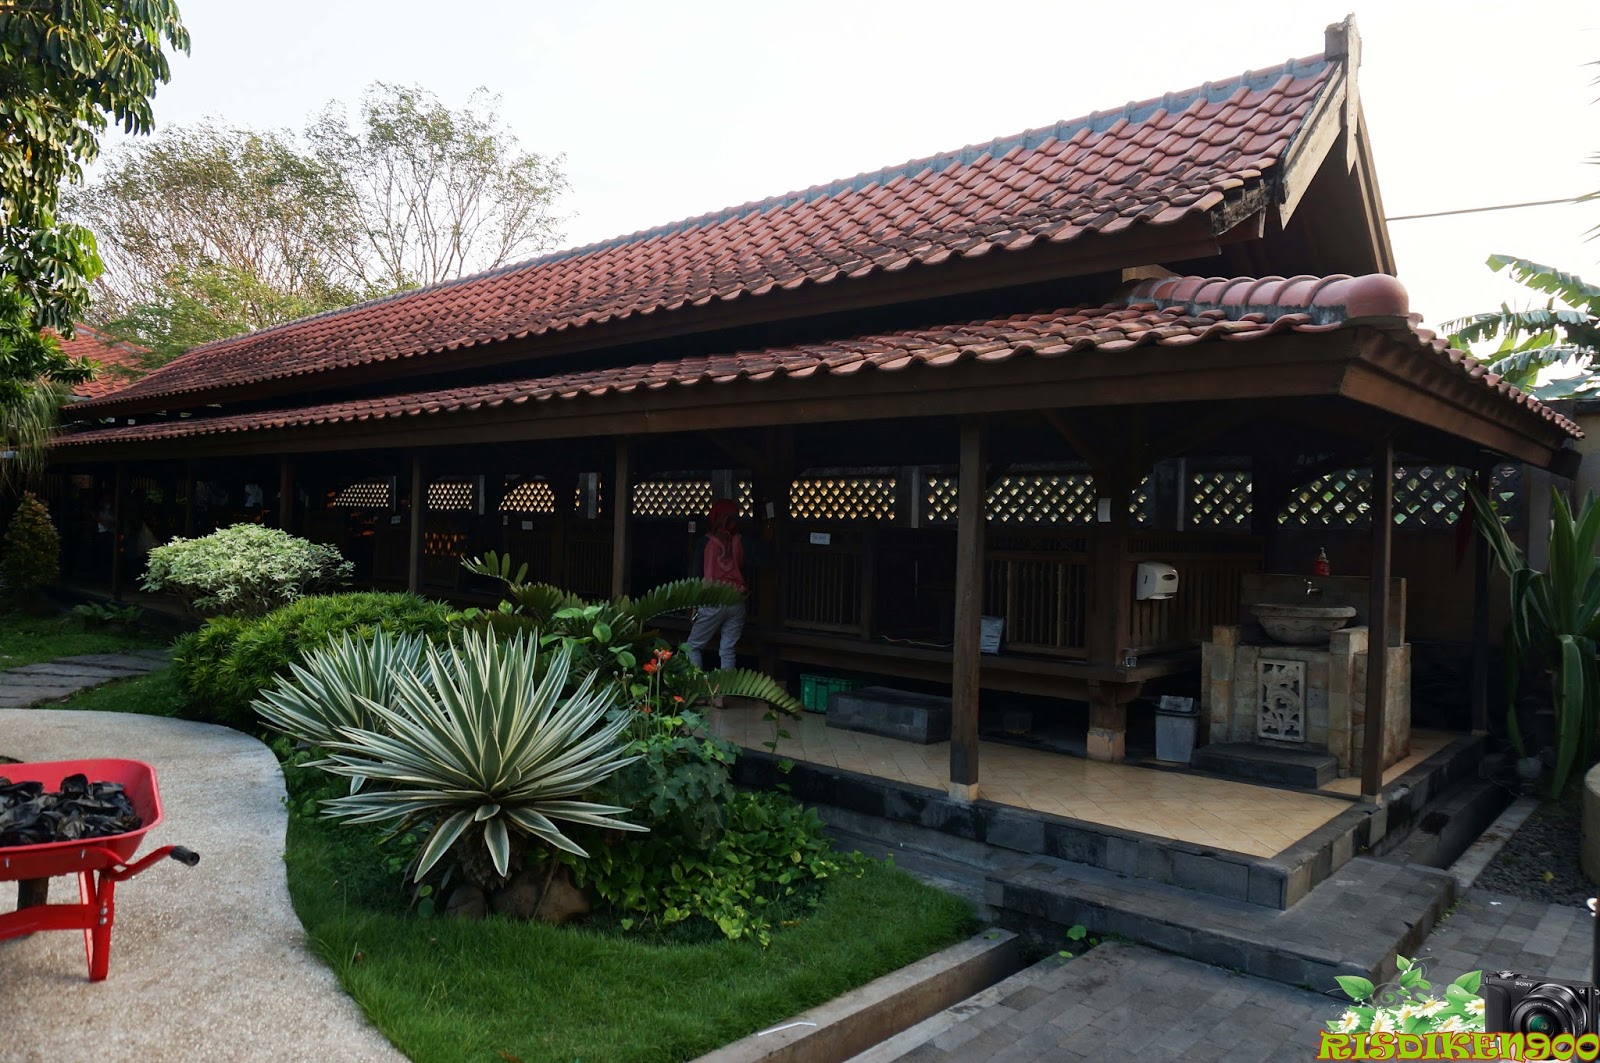 Perjalananku: Rumah Makan Taman & Lesehan Dewi Sri Jl. Raya Gayaman